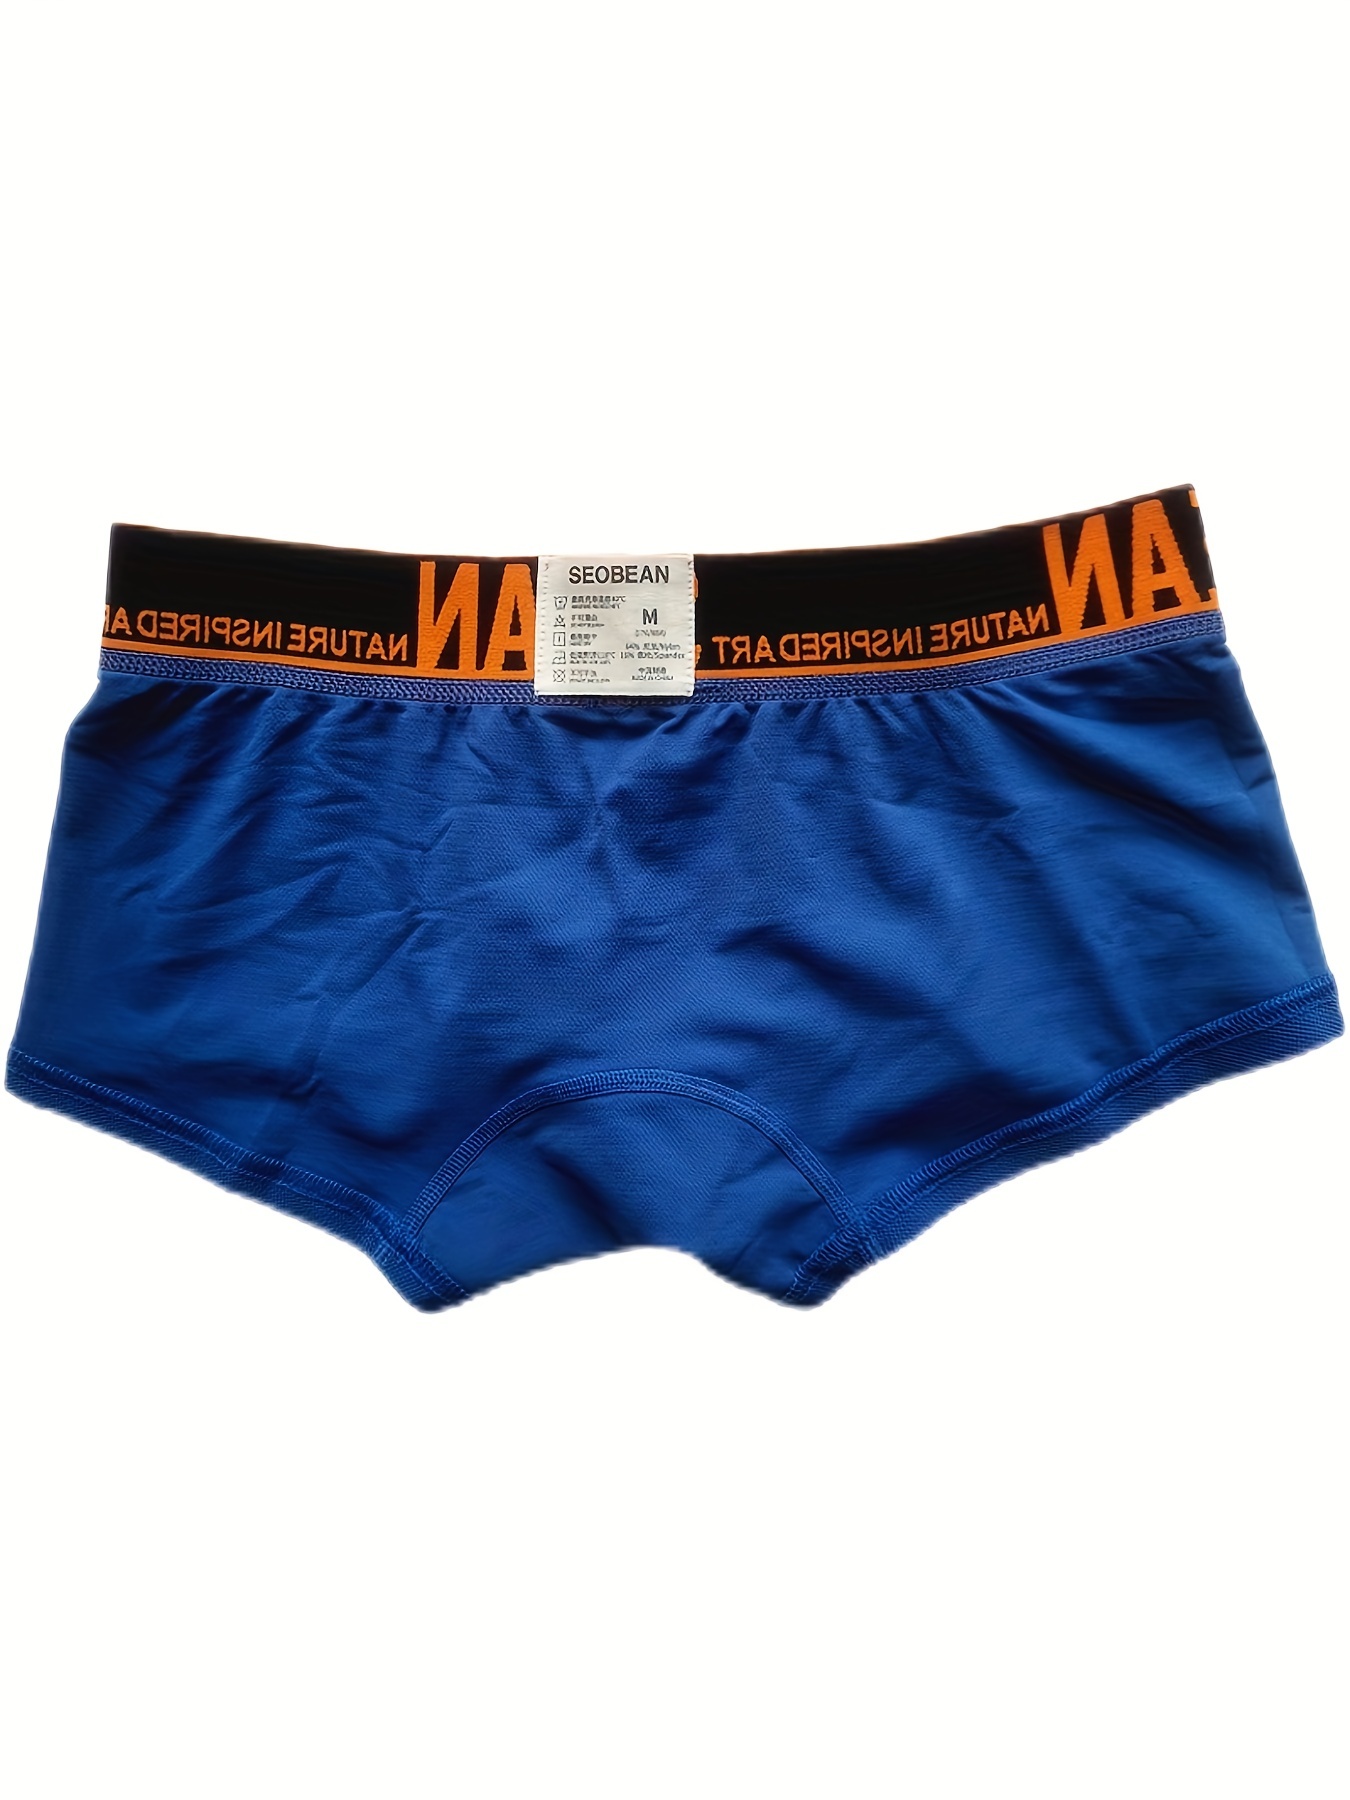 Cloudoon Men's Underwear U-type Double-layer Crotch Underpants Boxer Briefs- 4pcs